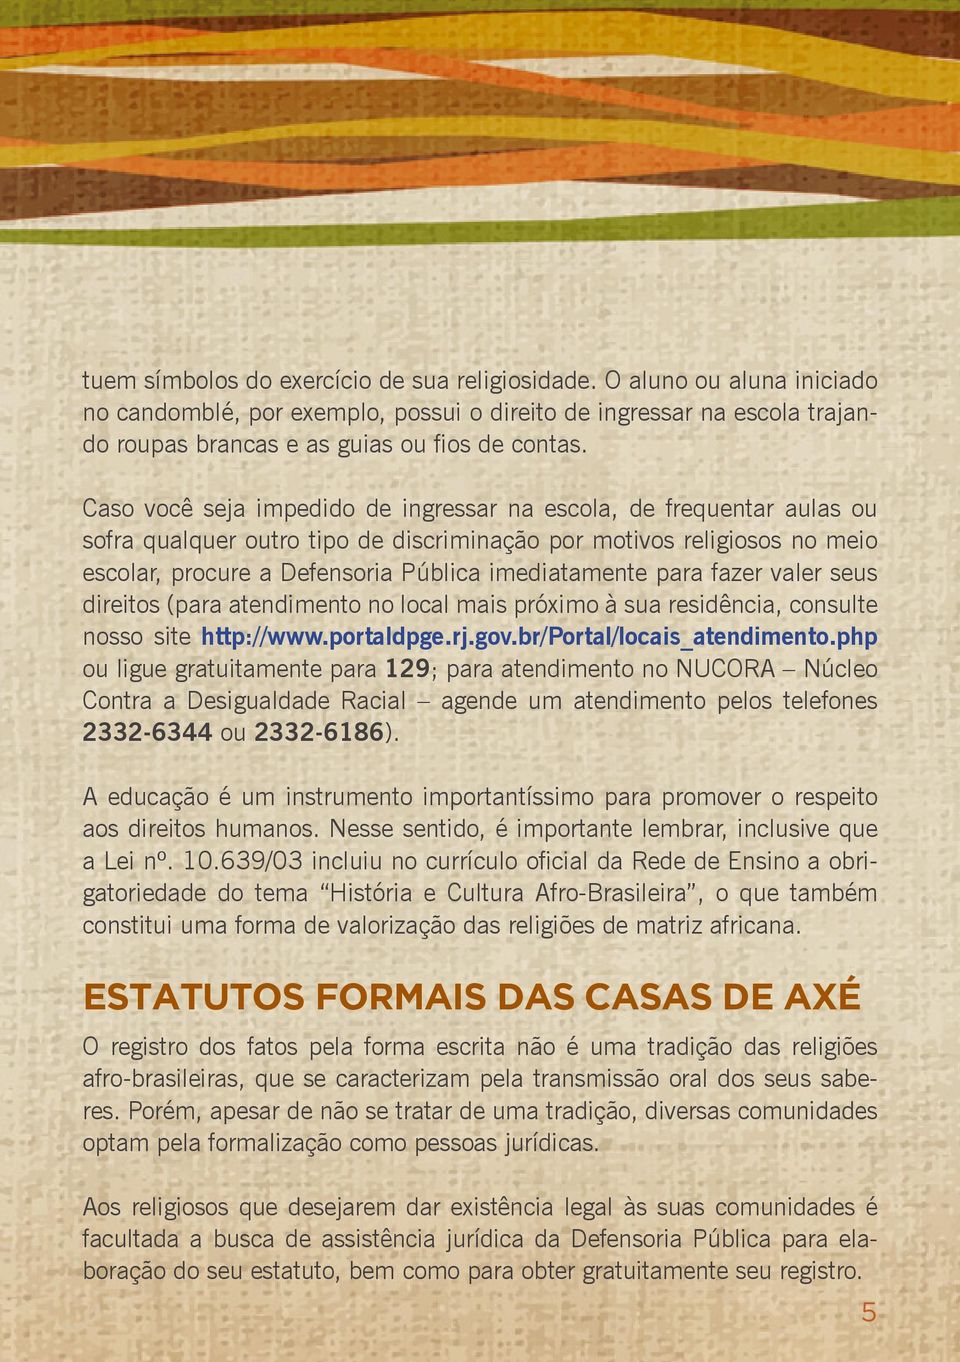 para fazer valer seus direitos (para atendimento no local mais próximo à sua residência, consulte nosso site http://www.portaldpge.rj.gov.br/portal/locais_atendimento.